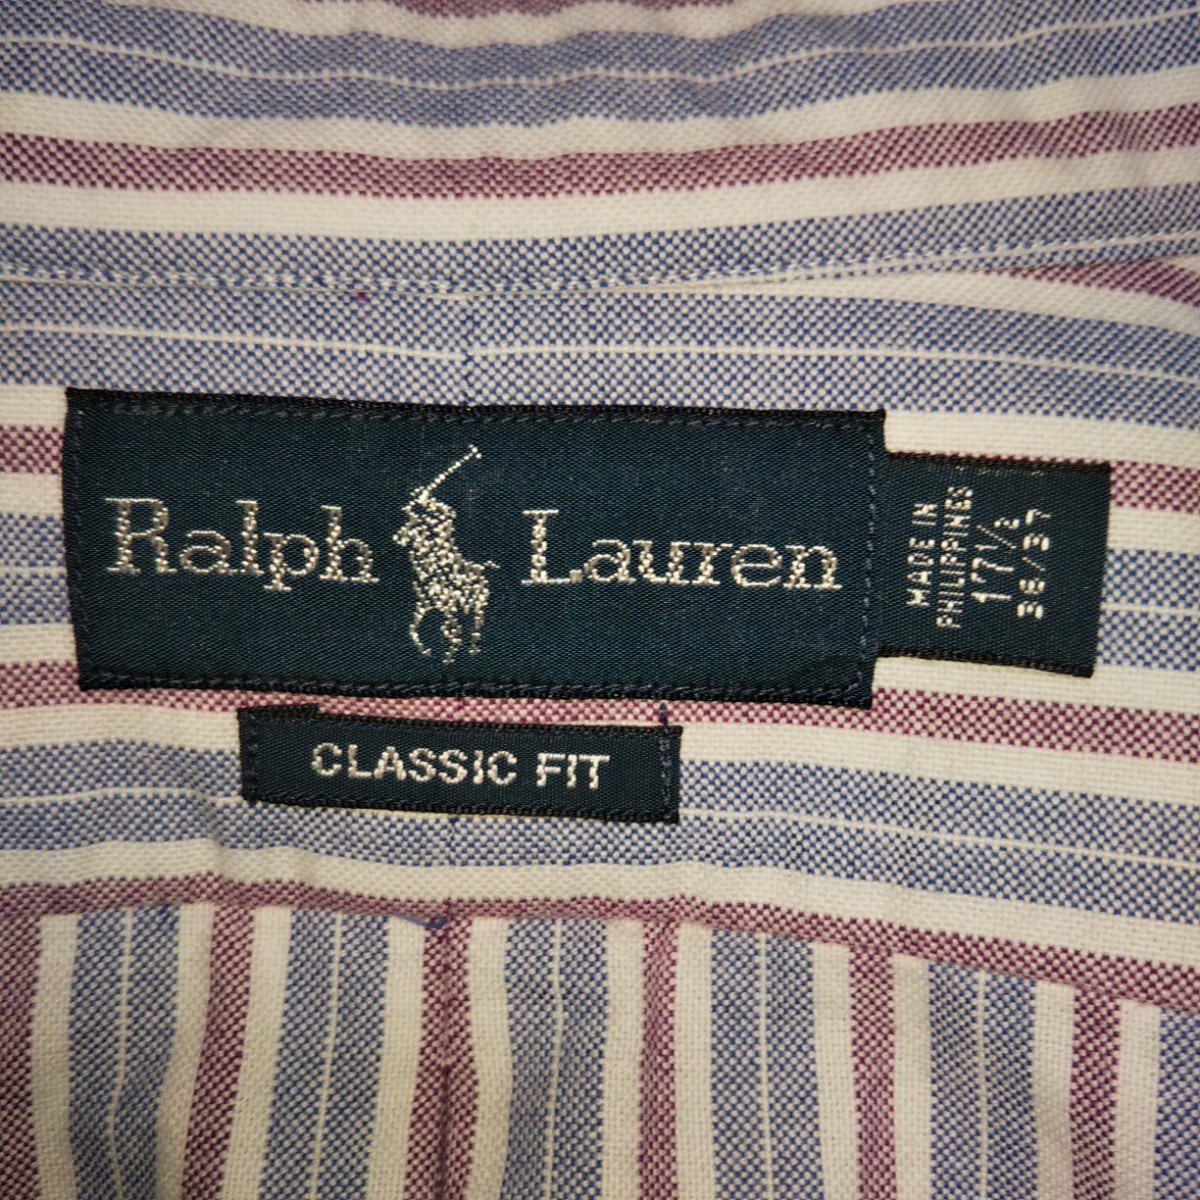 ラルフローレン☆ボタンダウンシャツ ストライプ柄 長袖 XL ブルー系 90s